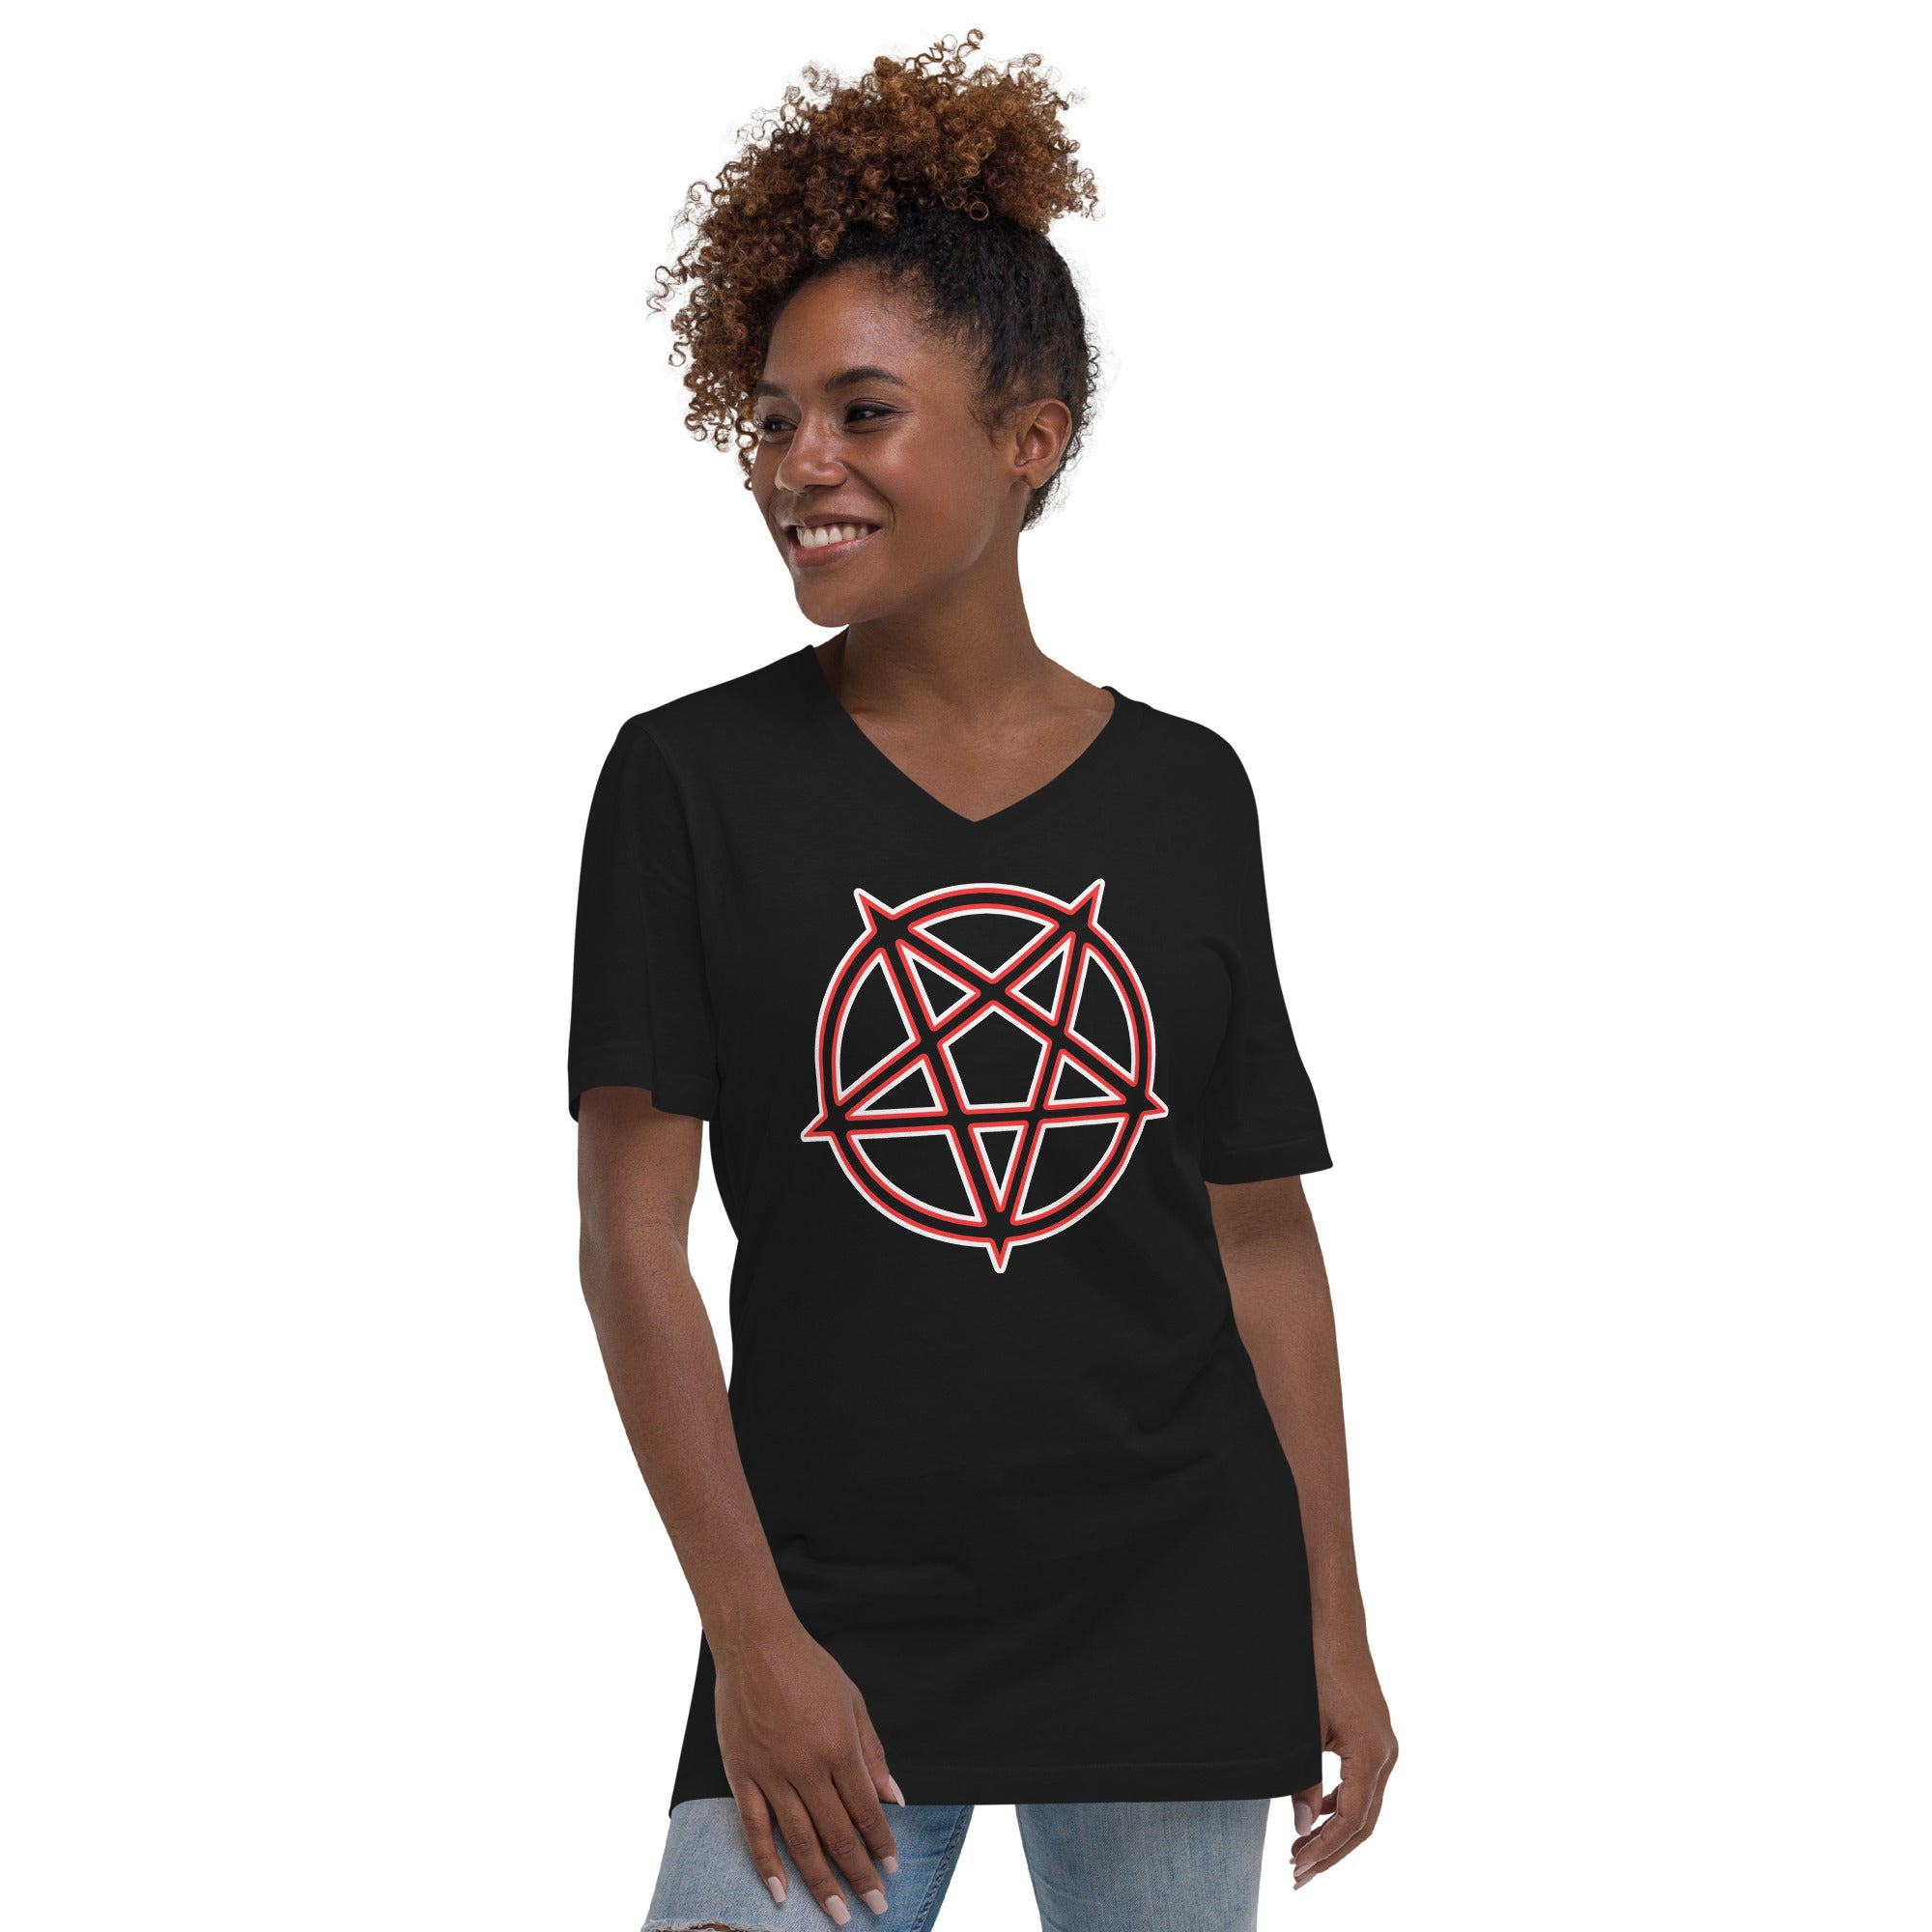 Satanic Occult Symbol The Inverted Pentagram Women’s Short Sleeve V-Neck T-Shirt